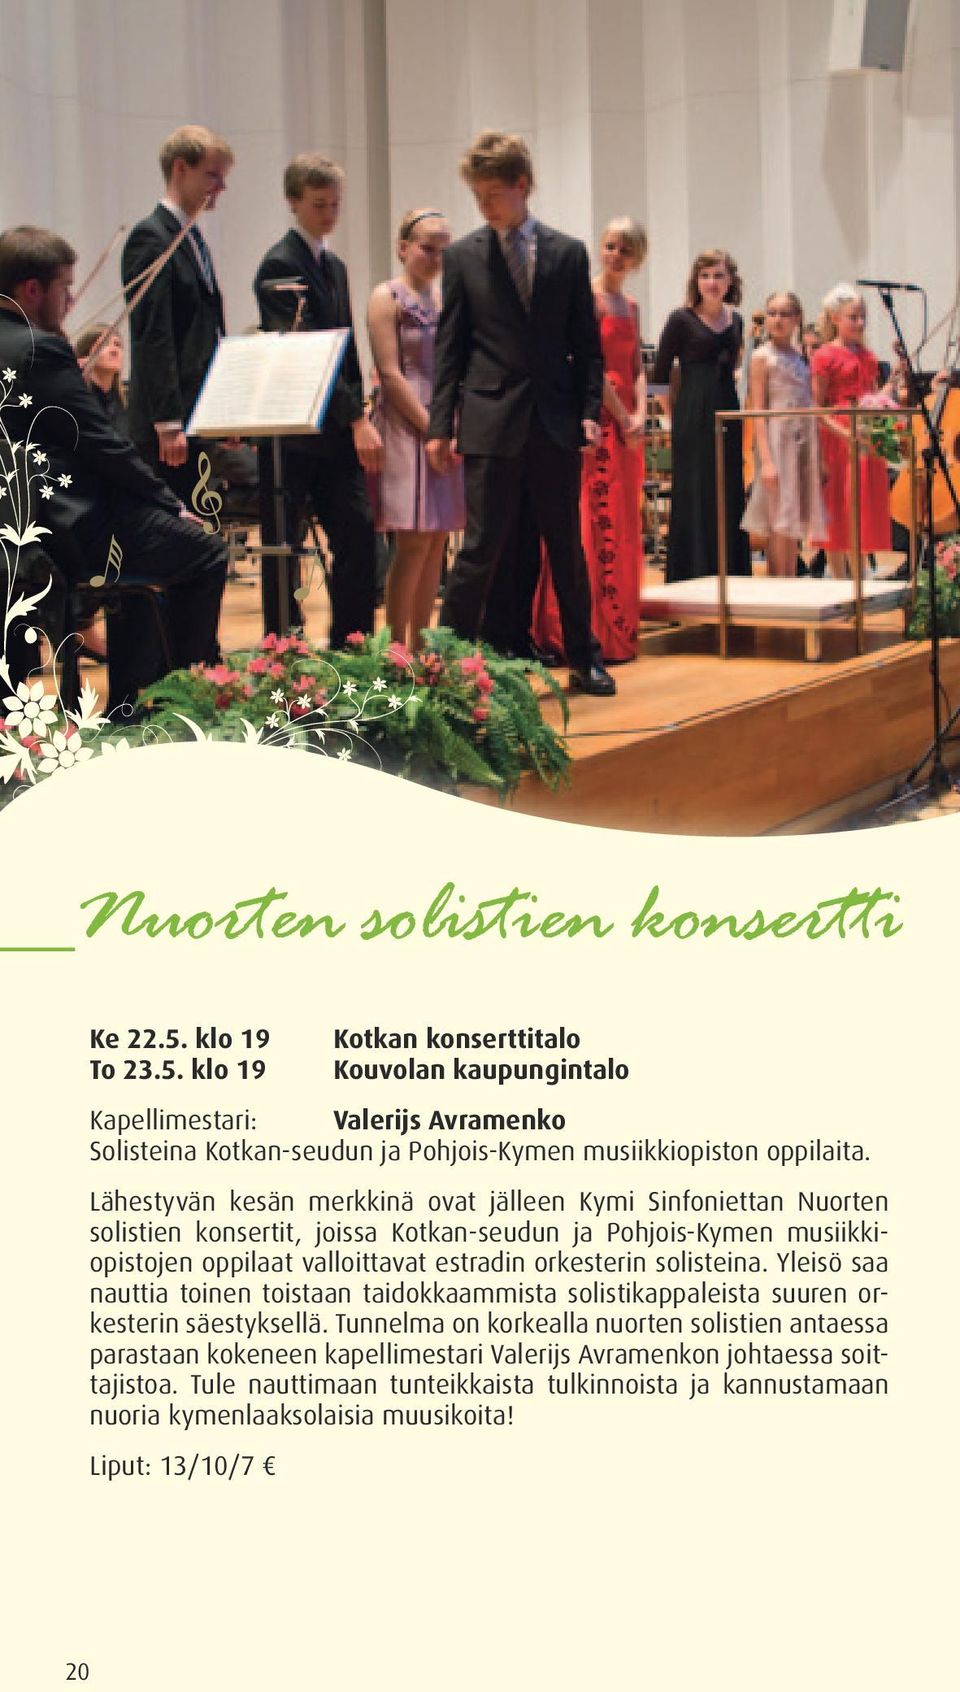 Lähestyvän kesän merkkinä ovat jälleen Kymi Sinfoniettan Nuorten solistien konsertit, joissa Kotkan-seudun ja Pohjois-Kymen musiikkiopistojen oppilaat valloittavat estradin orkesterin